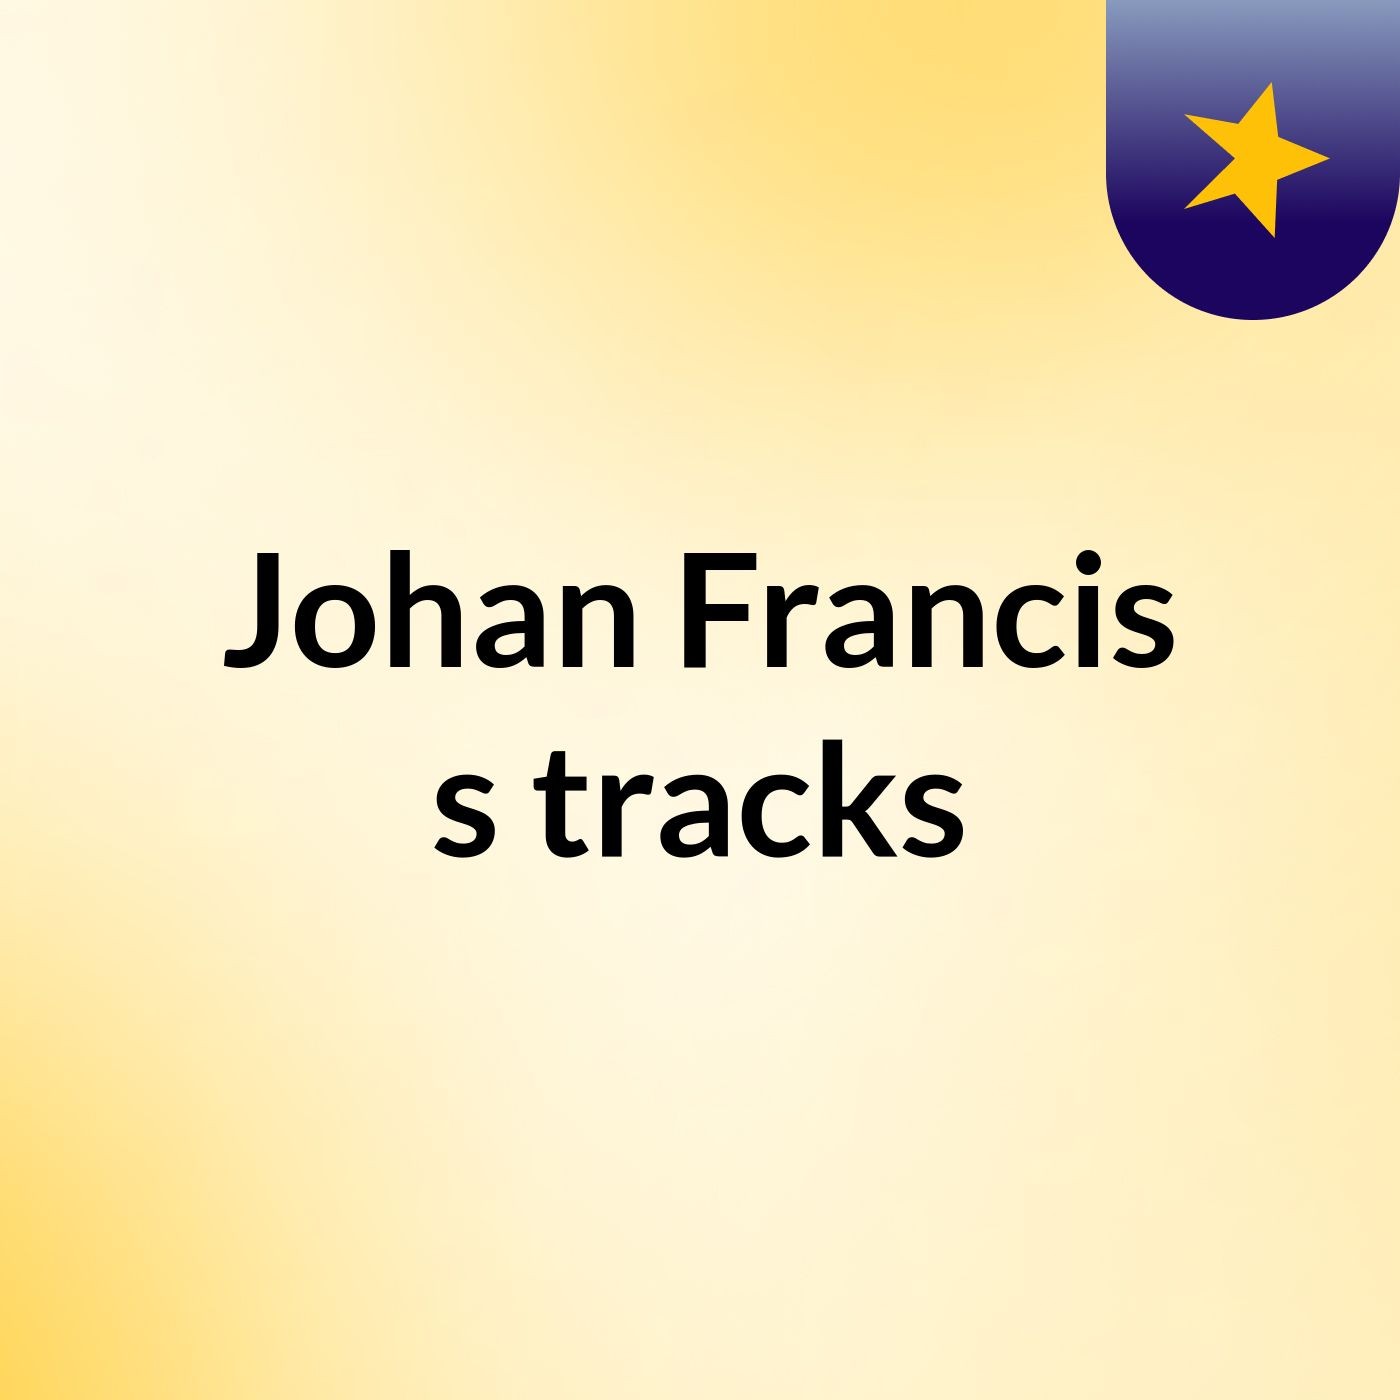 Johan Francis's tracks